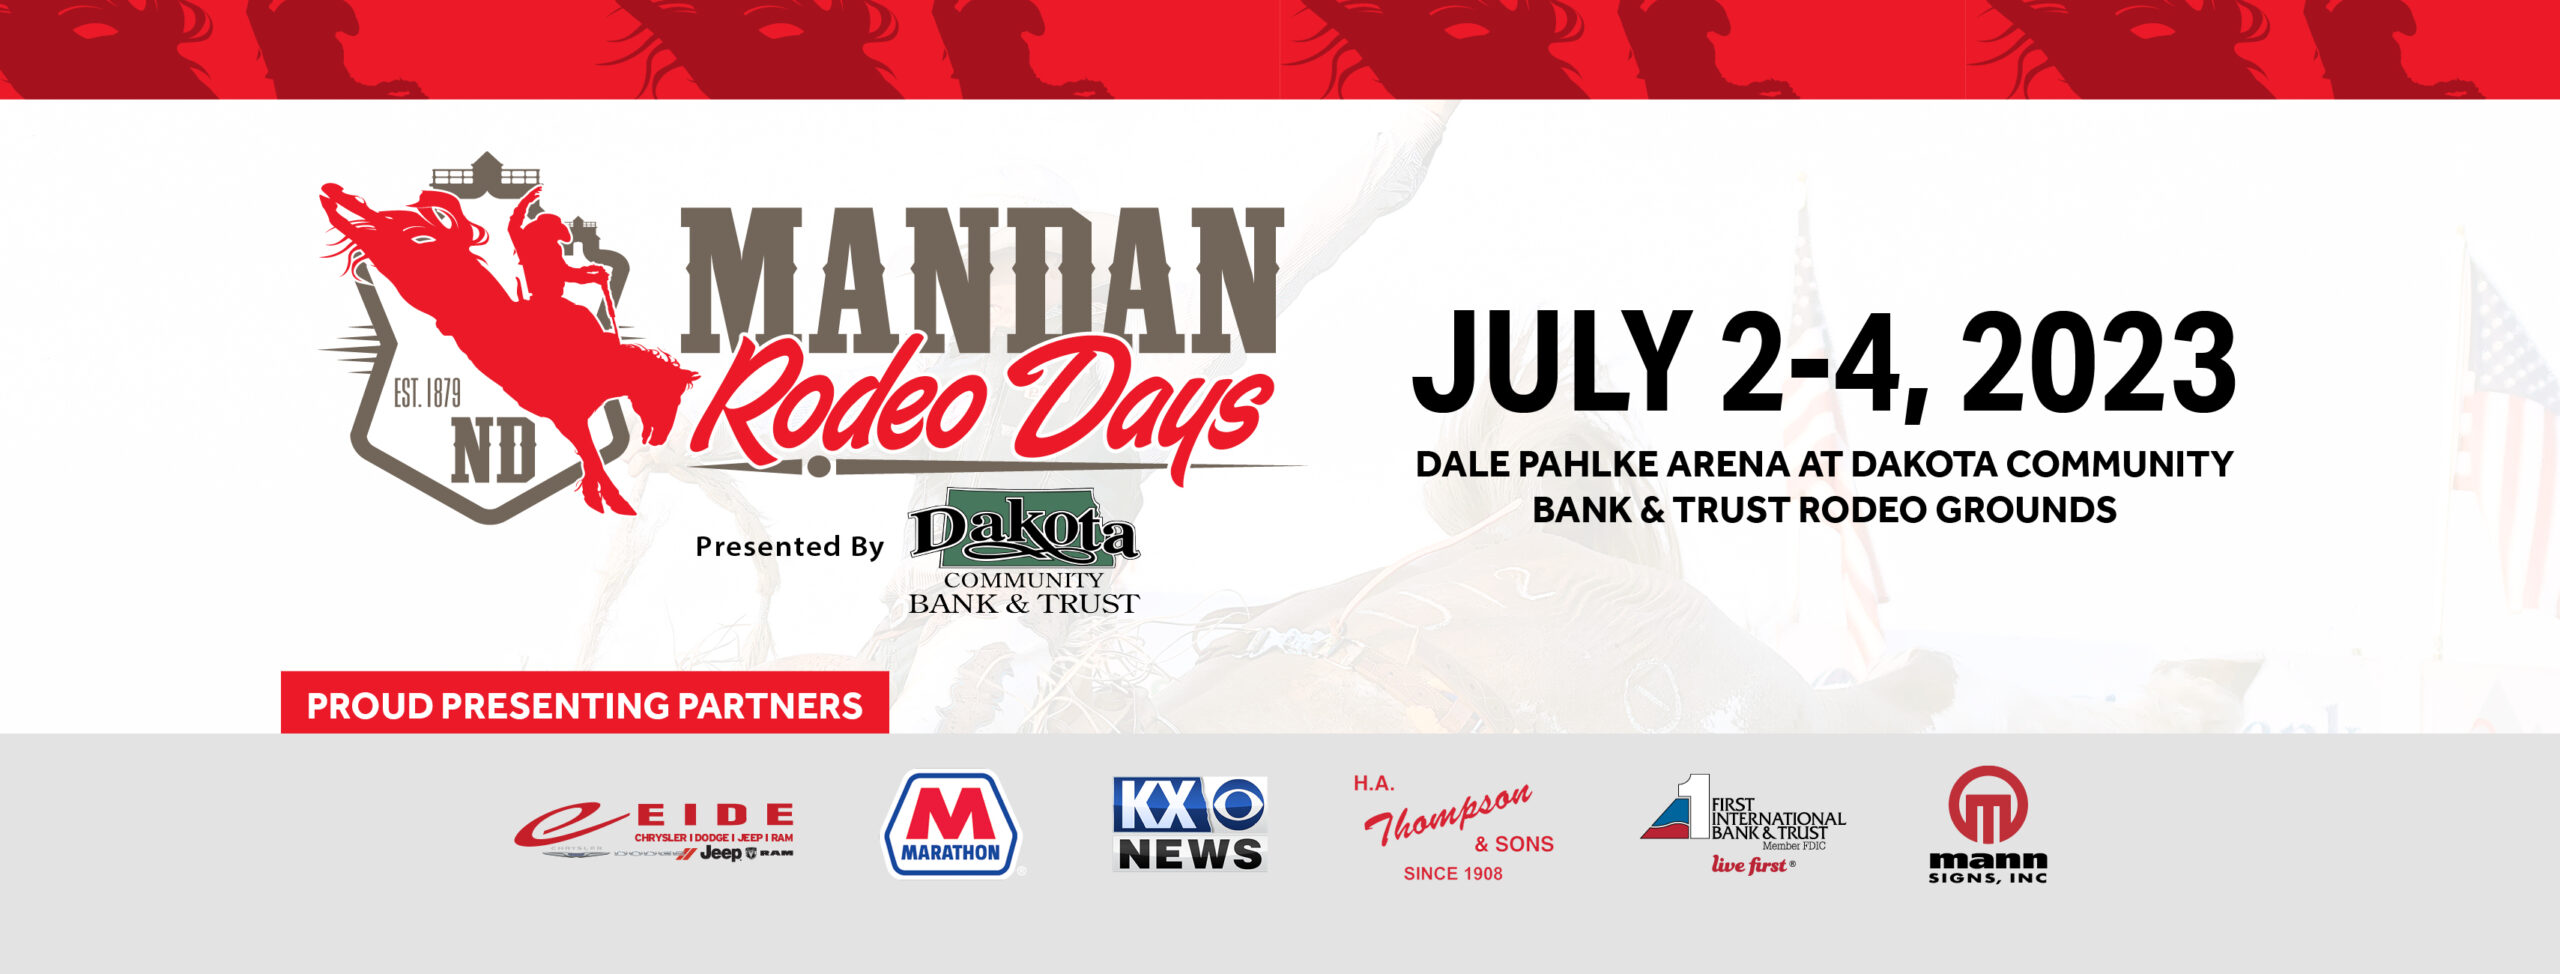 Schedule Mandan Rodeo